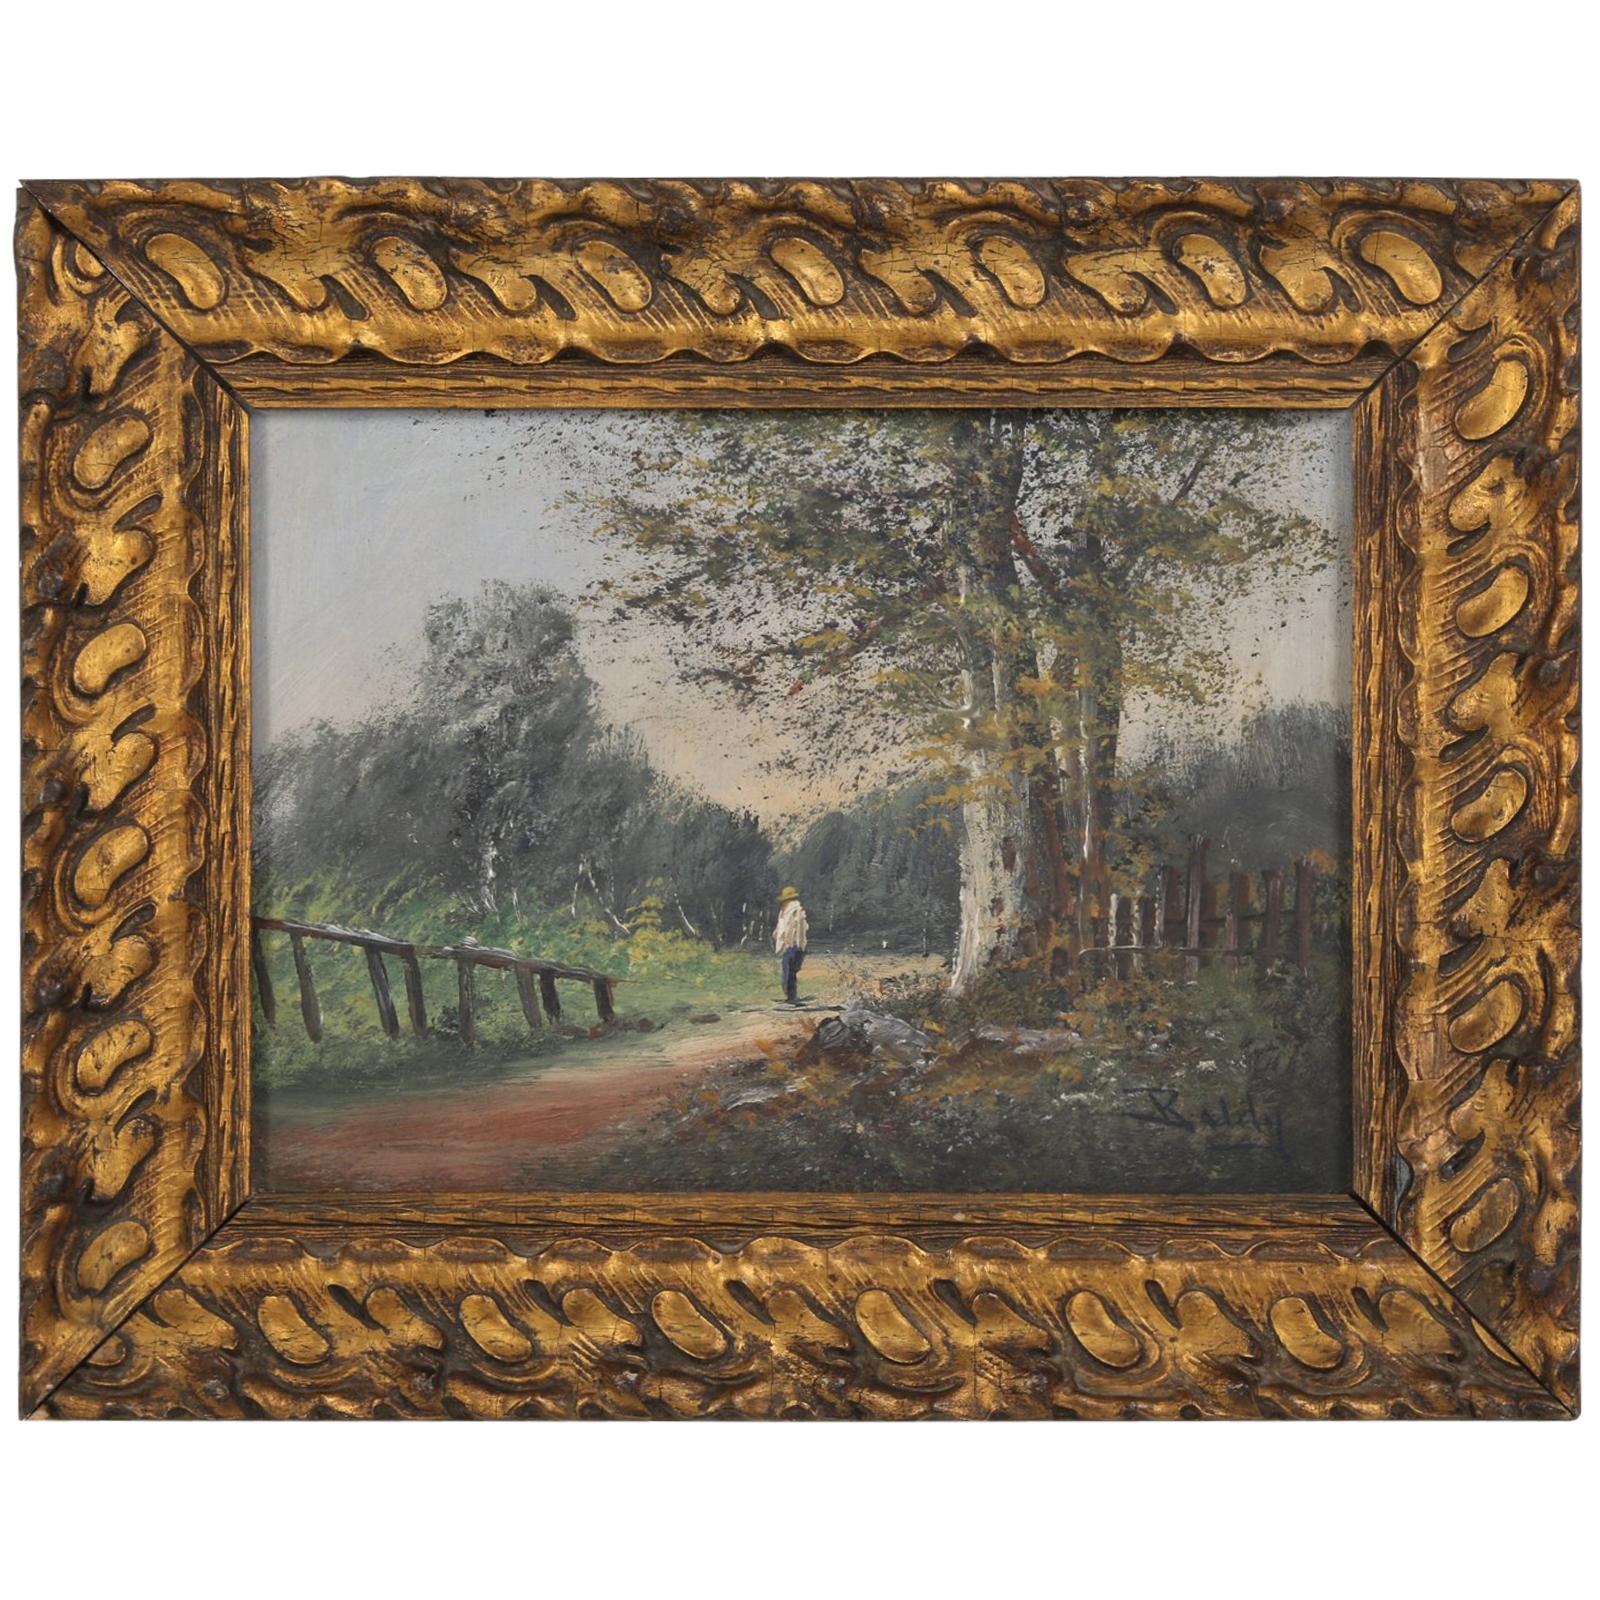 Original vintageantique oil landscape painting signed